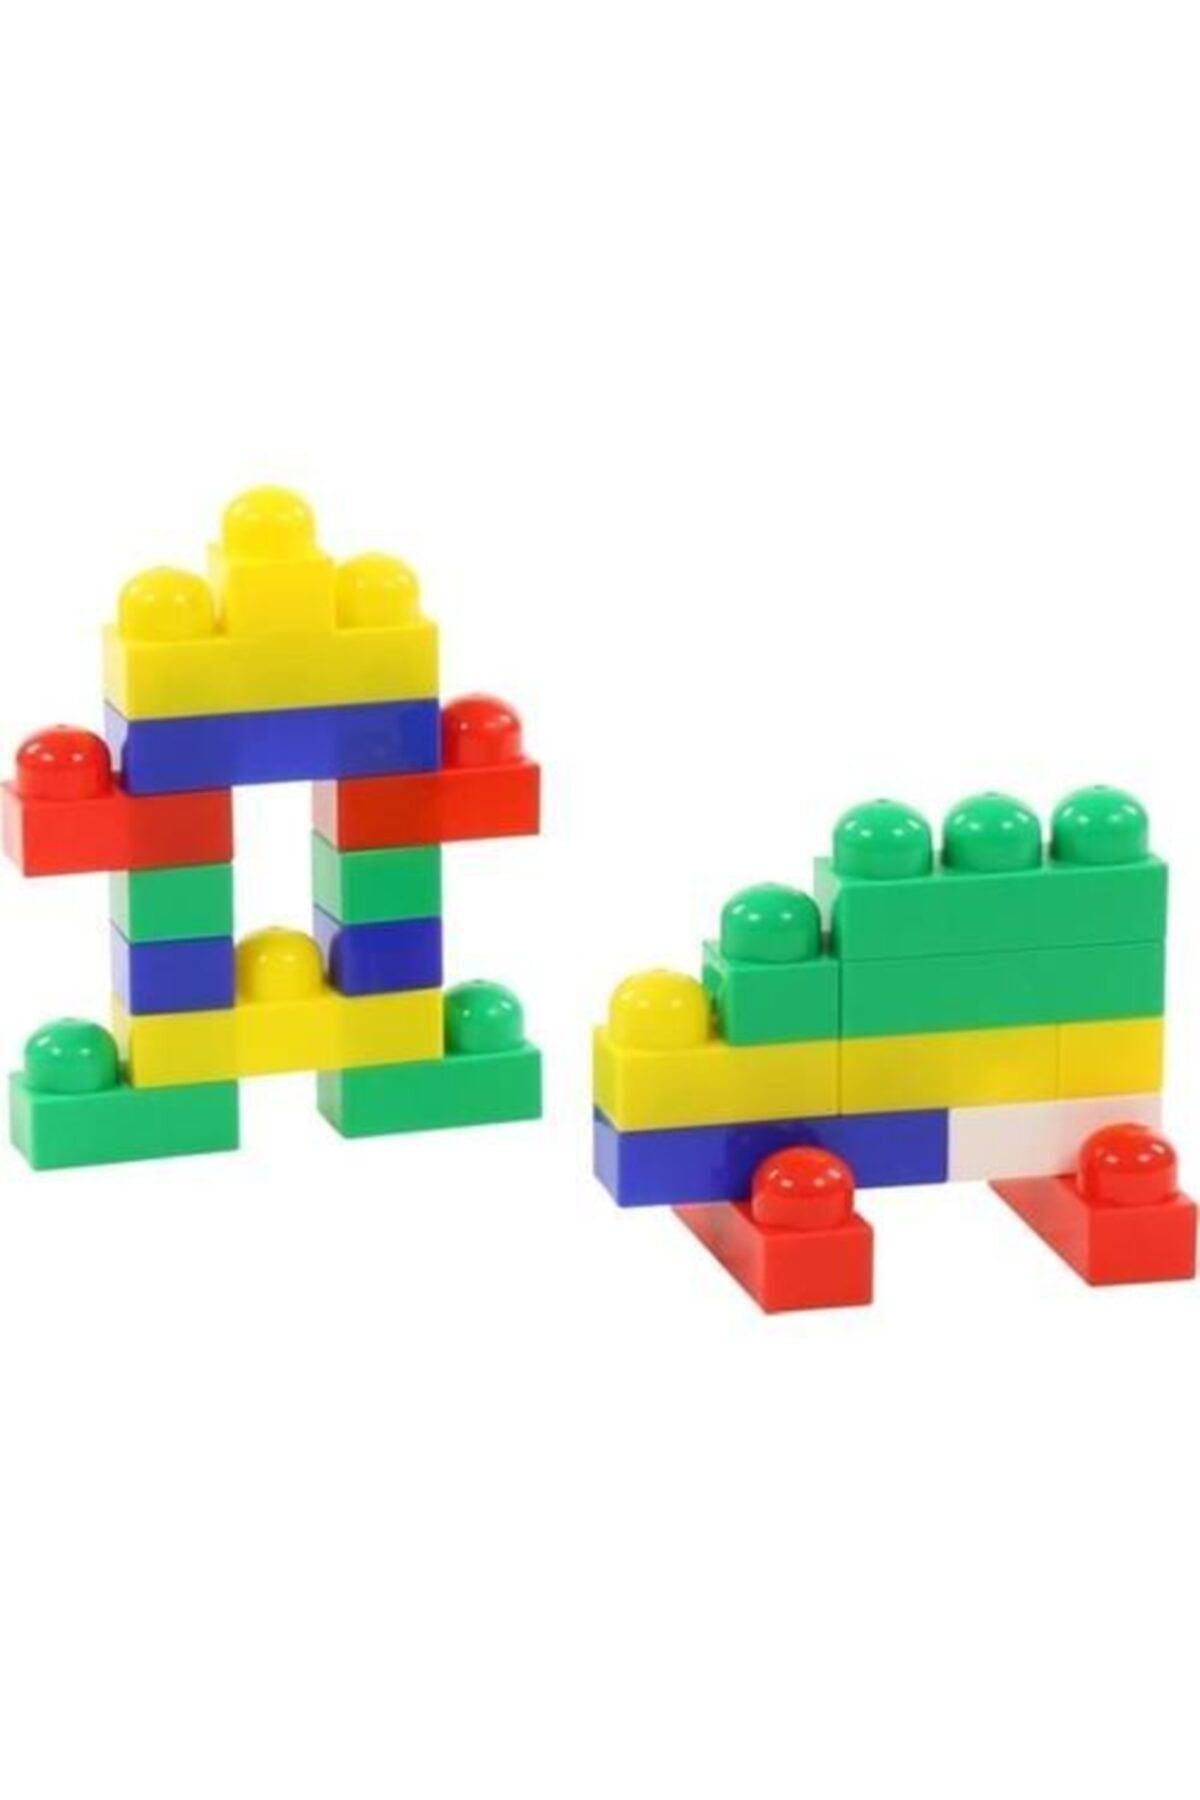 Polesie Hediye Oyuncak Polesie Junior 51 Parça Oyuncak Tasarım Lego Set - Pol-6653